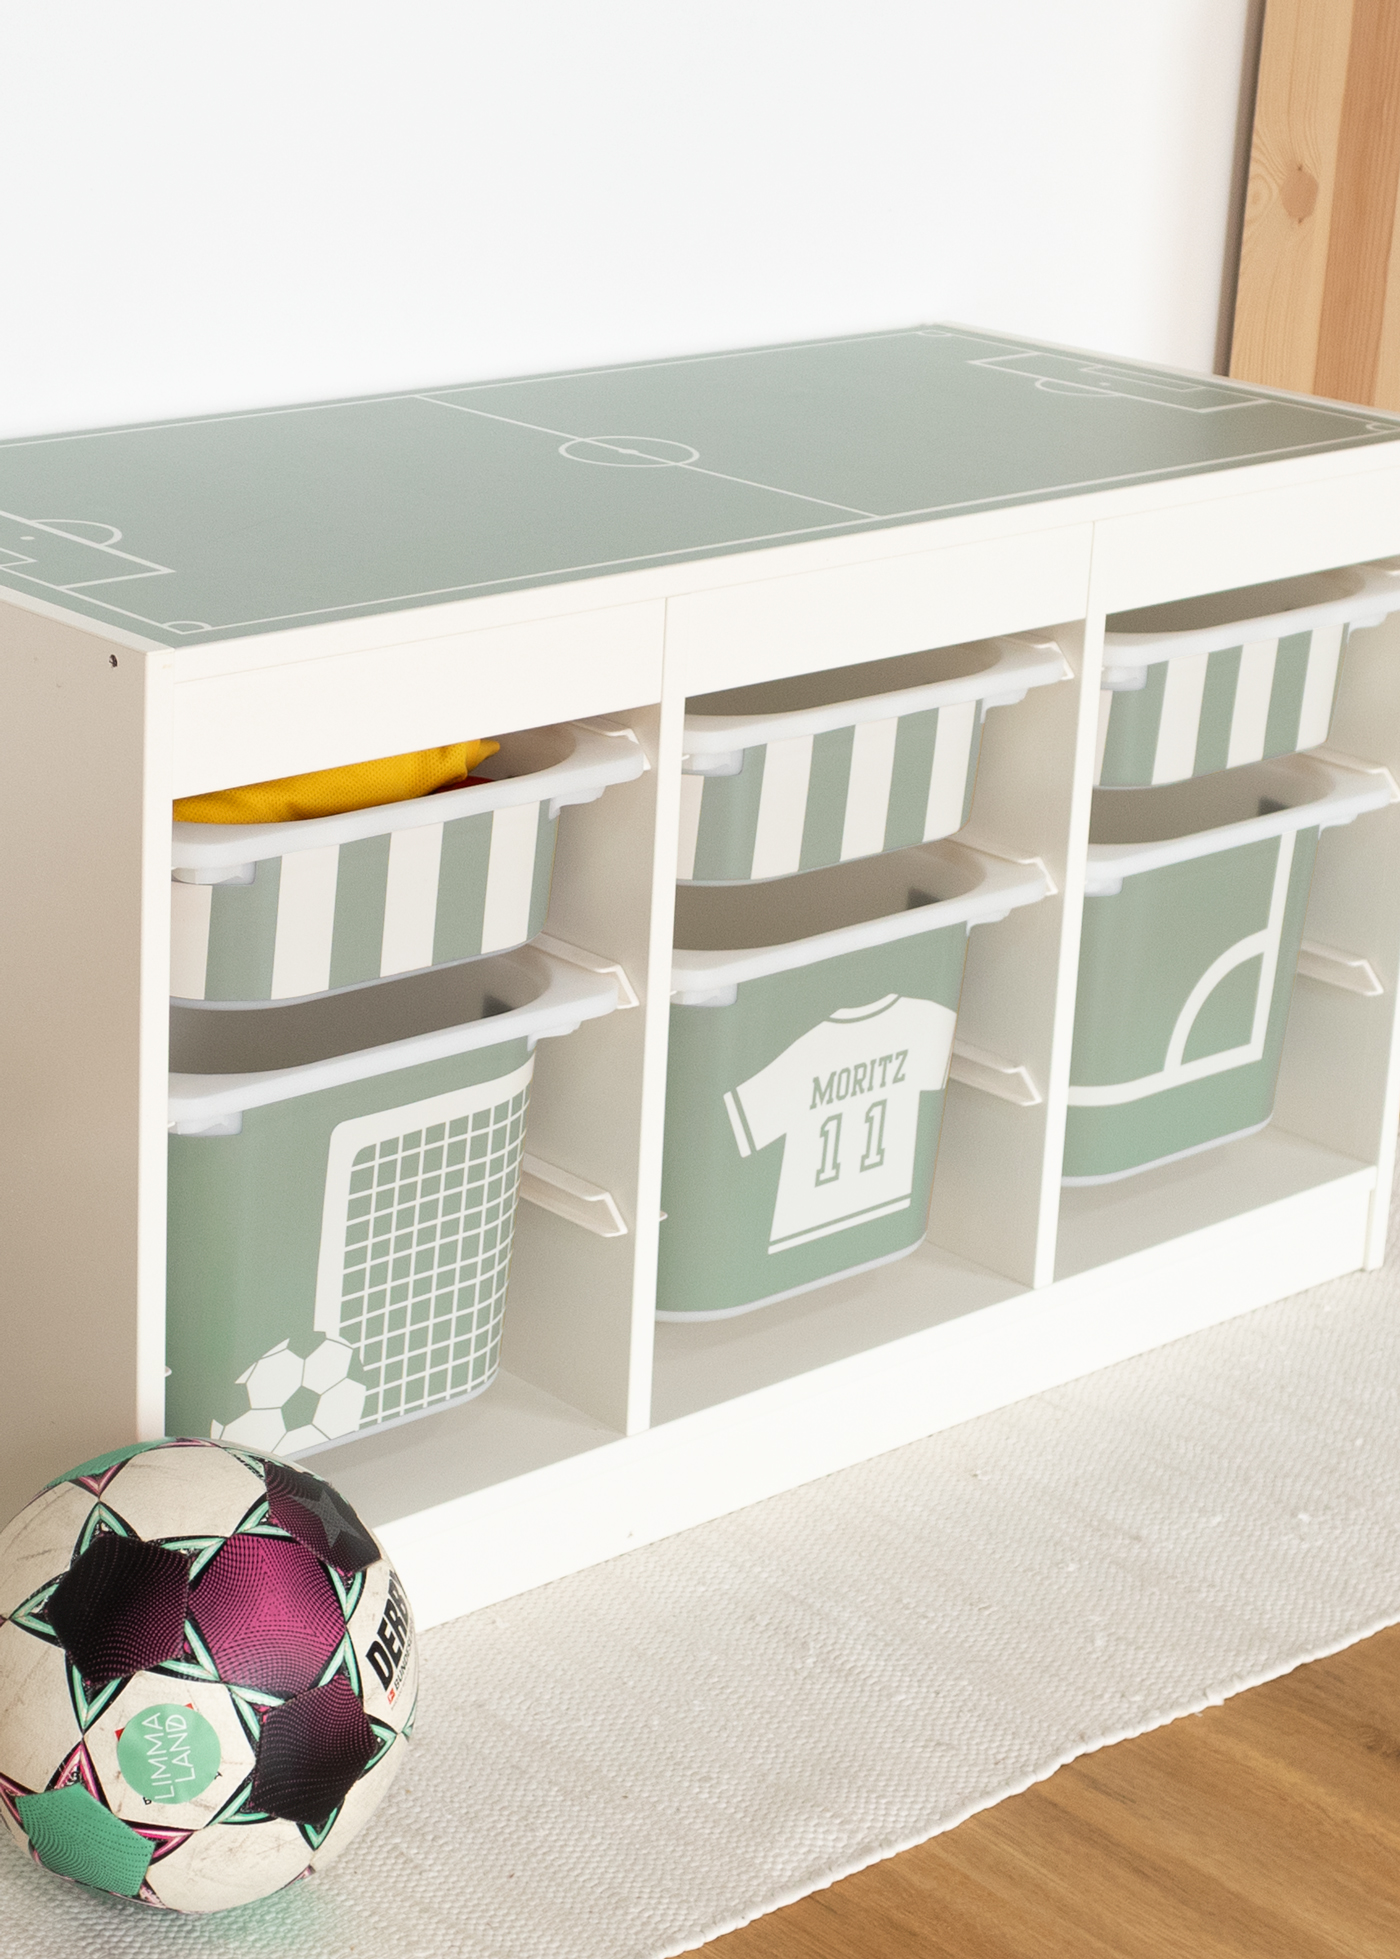 Fußball Deko für dein Fußball Kinderzimmer als Fußballzimmer Deko mit Fußballmotiven passend für die Fußball EM